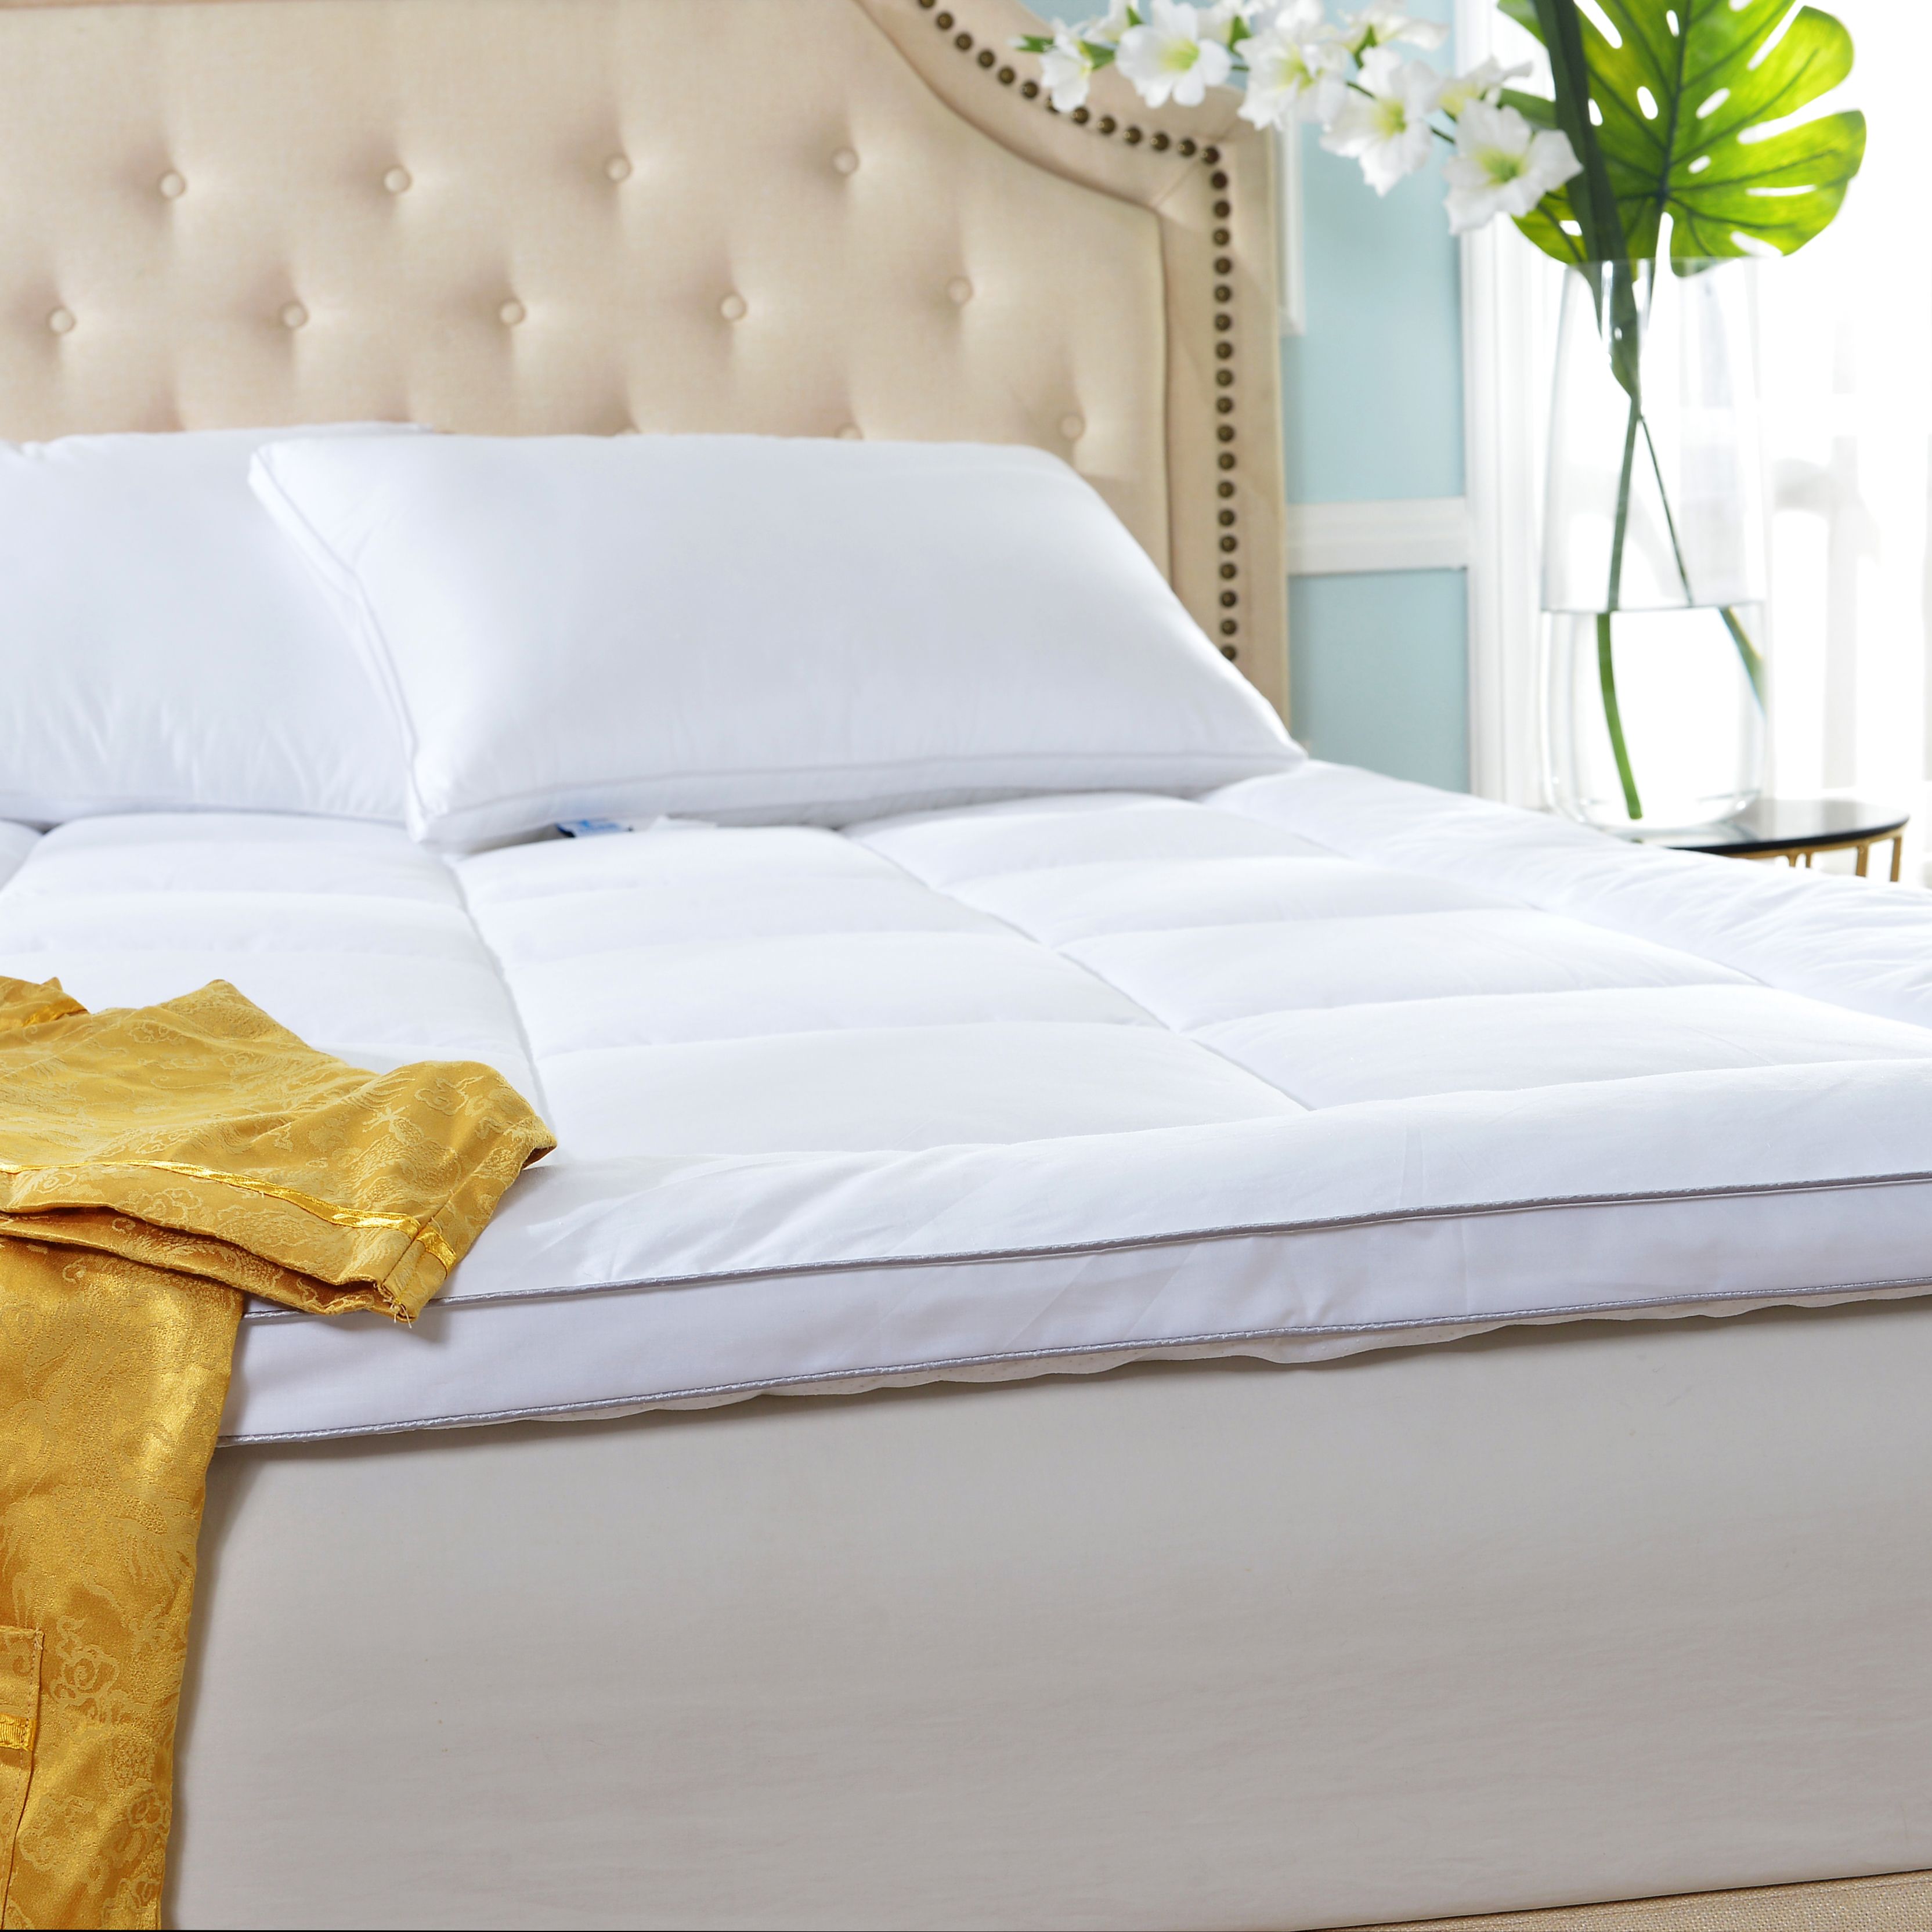 客房保护垫/酒店保护垫/酒店床品产品图